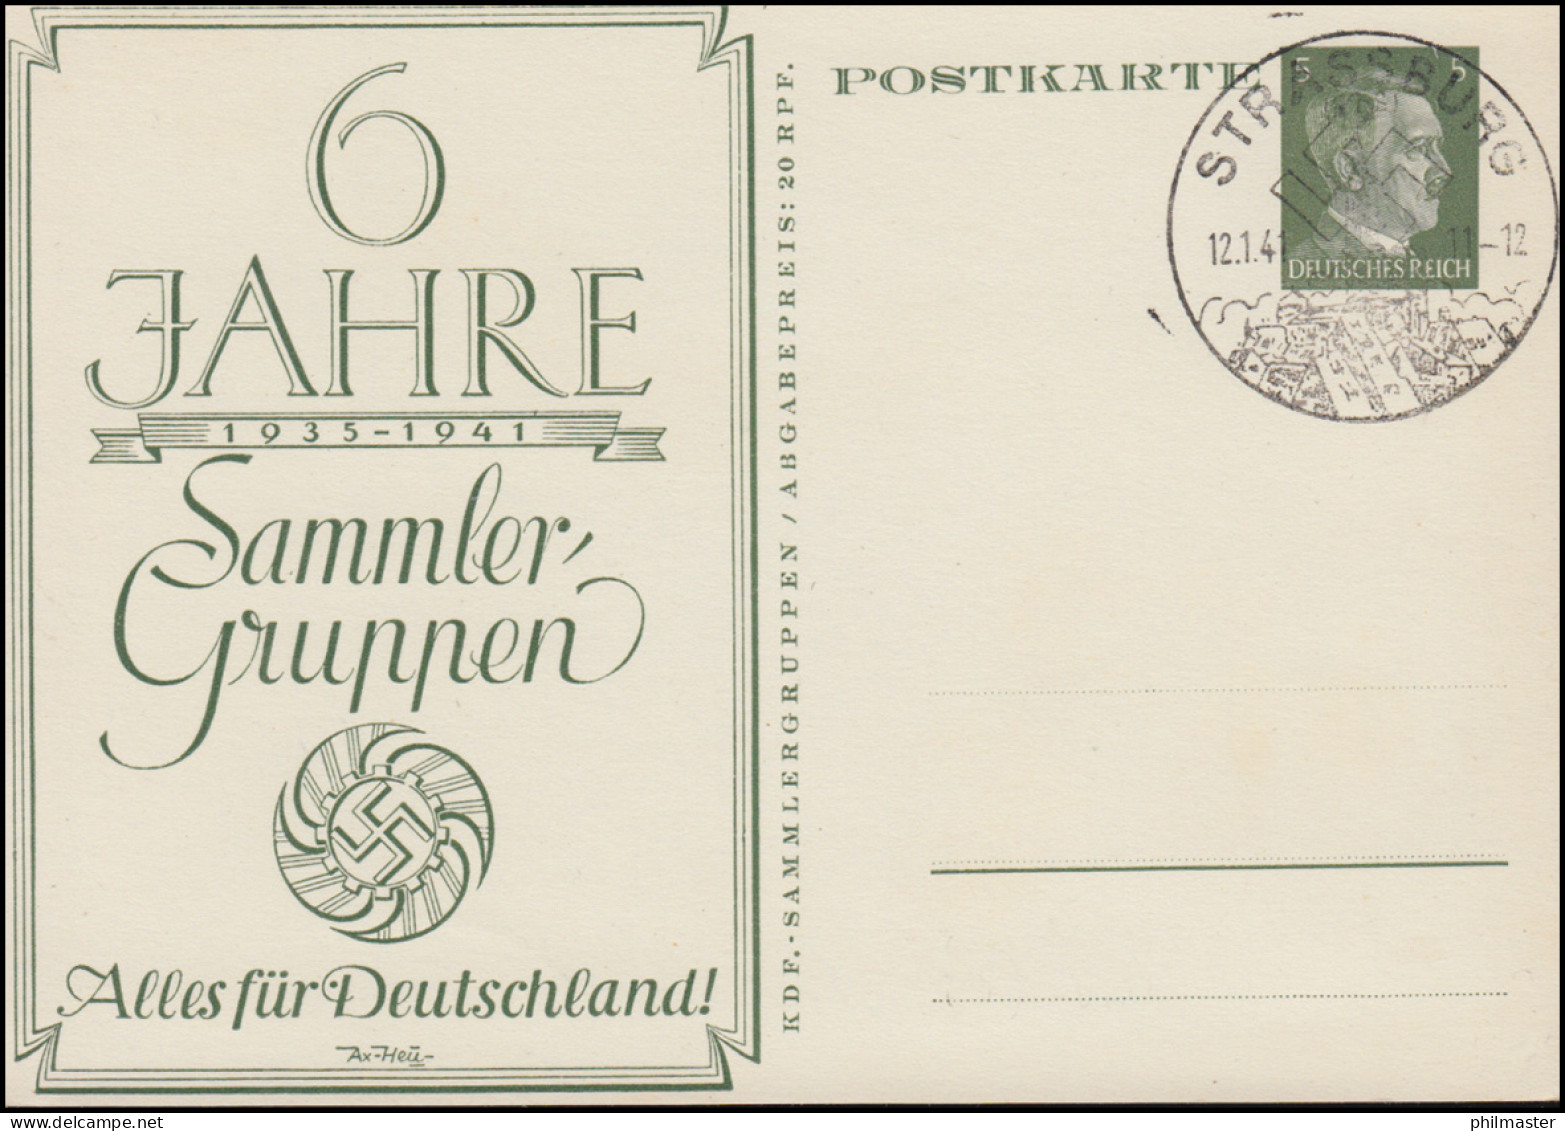 P 154 Alles Für Deutschland 60 Jahre Sammler-Guppen SSt STRASSBURG 12.1.1941 - Expositions Philatéliques